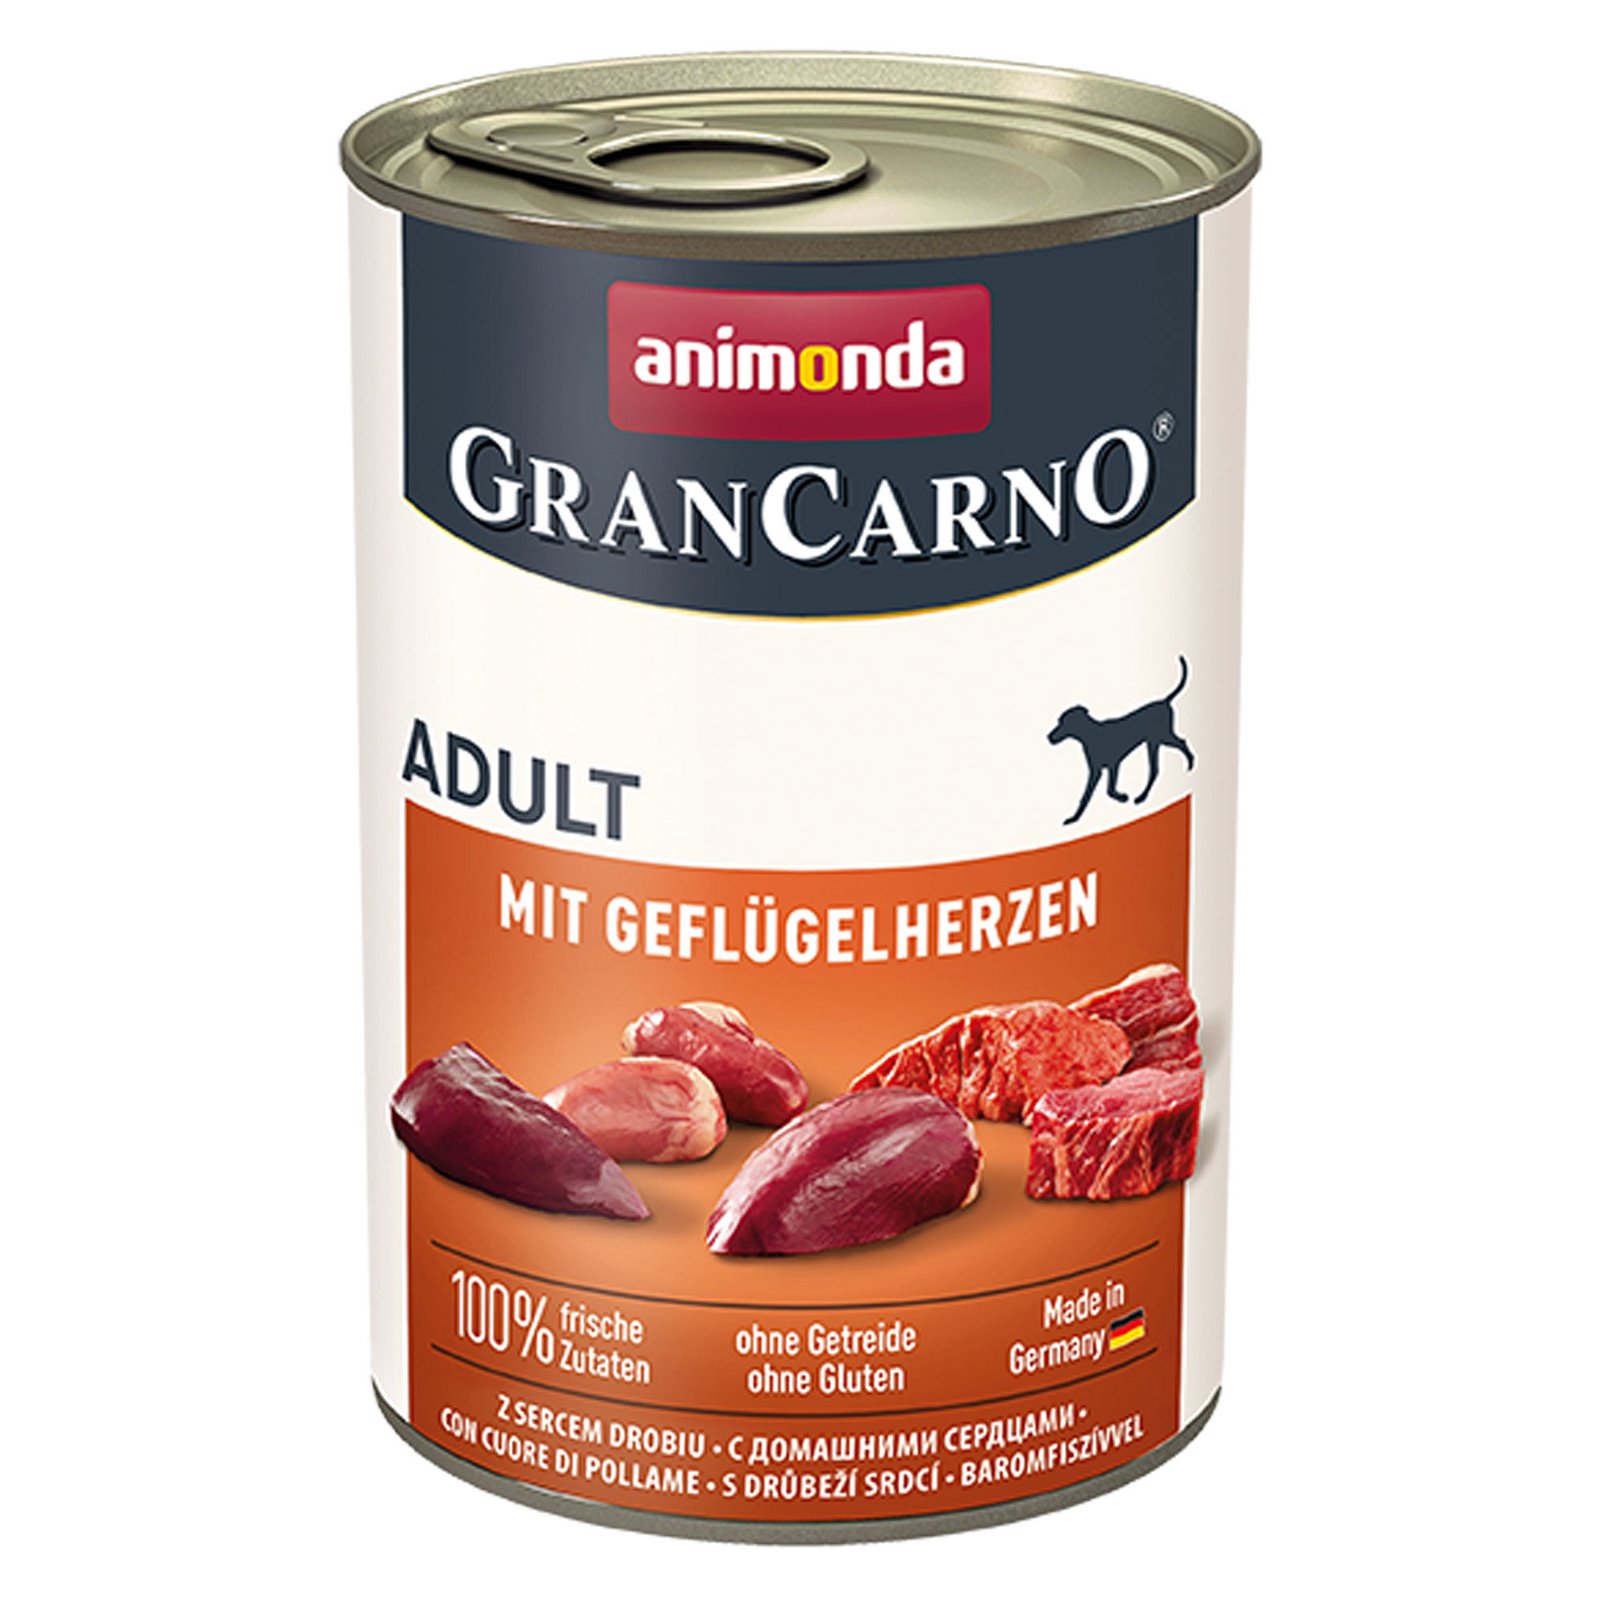 Animonda Gran Carno Adult mit Geflügelherzen, 400 g